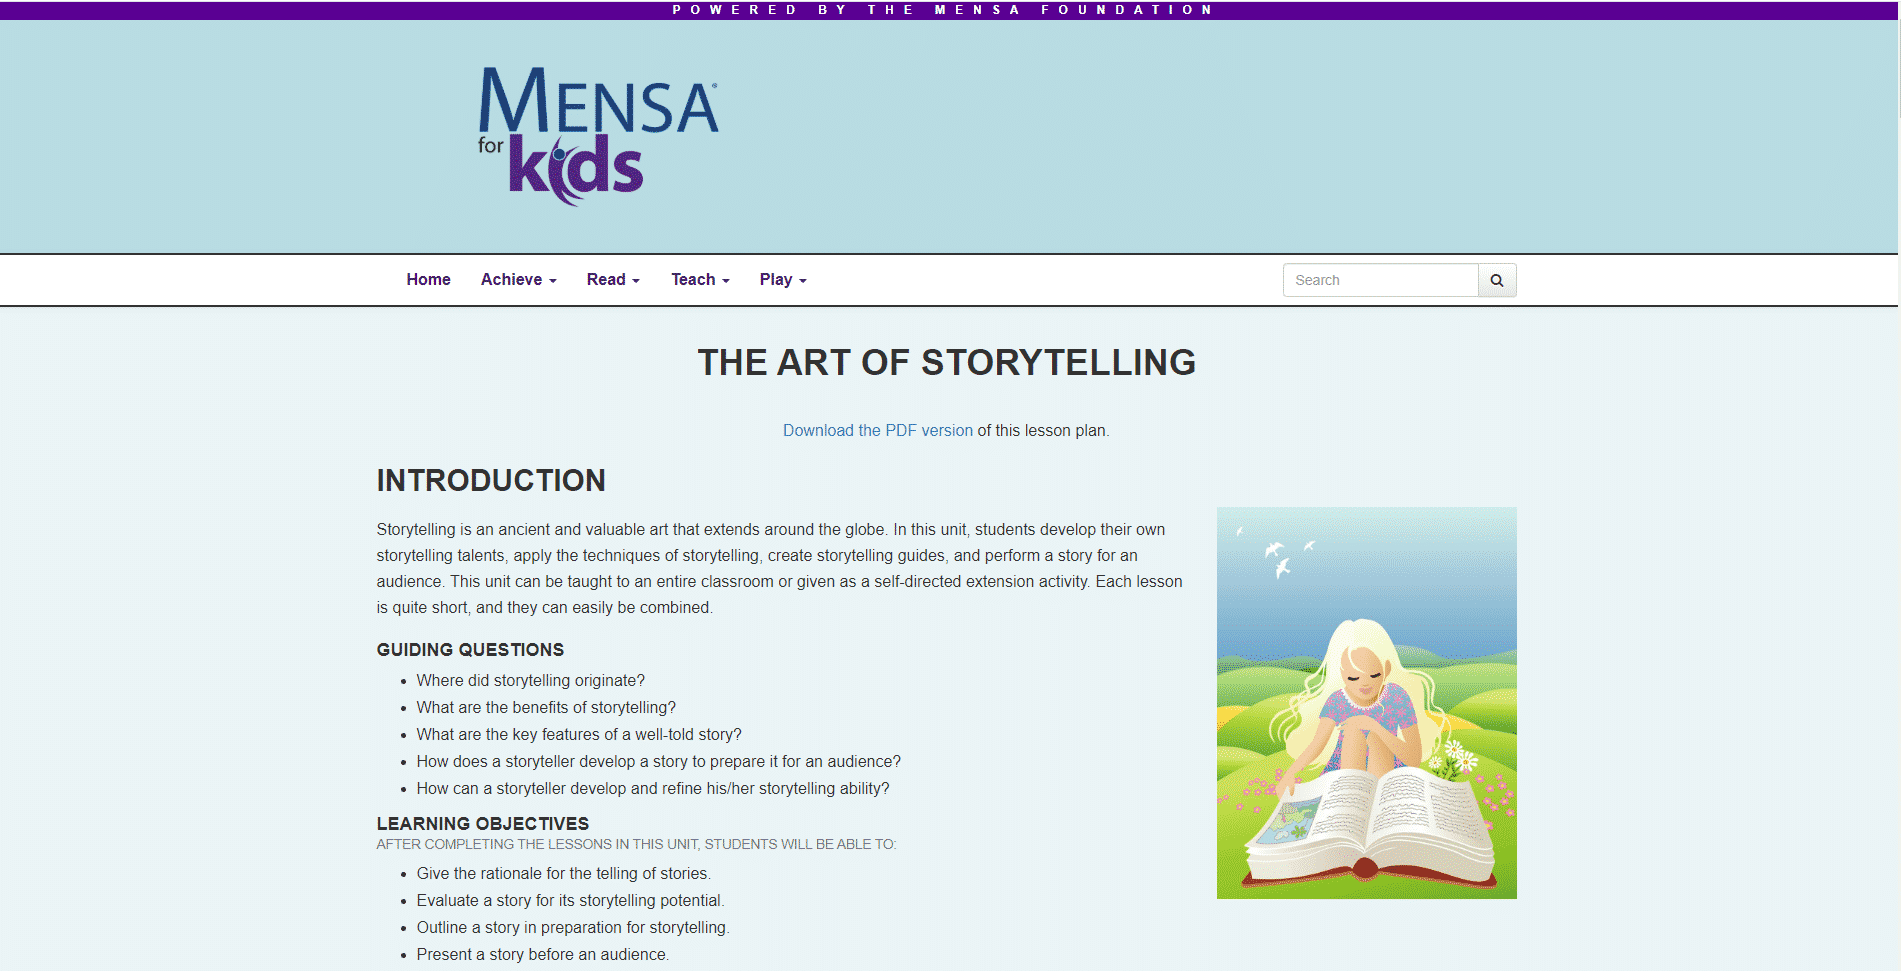 Mensa for Kids Learn Storytelling Lessons Online